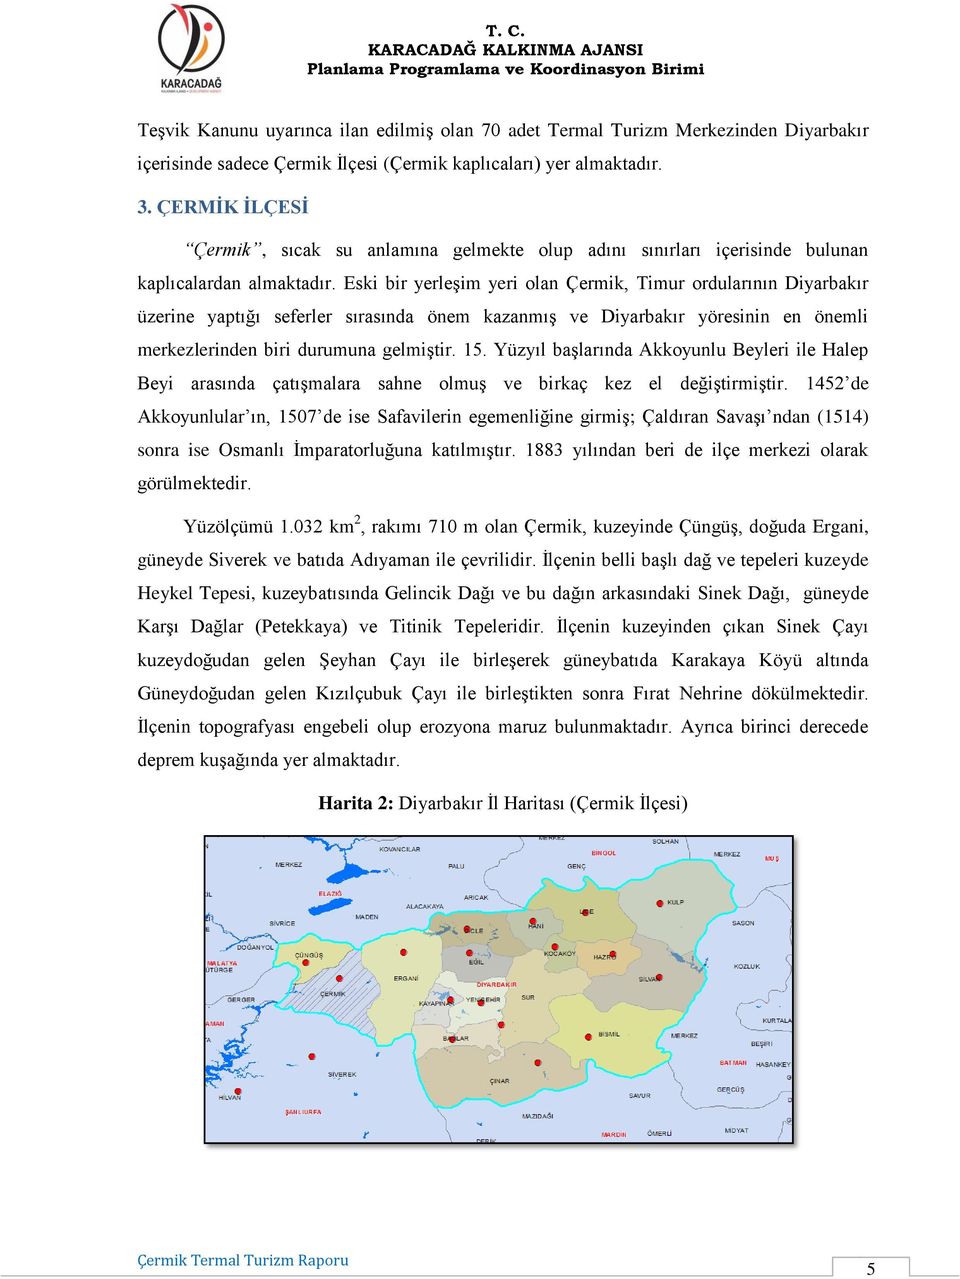 Eski bir yerleşim yeri olan Çermik, Timur ordularının Diyarbakır üzerine yaptığı seferler sırasında önem kazanmış ve Diyarbakır yöresinin en önemli merkezlerinden biri durumuna gelmiştir. 15.